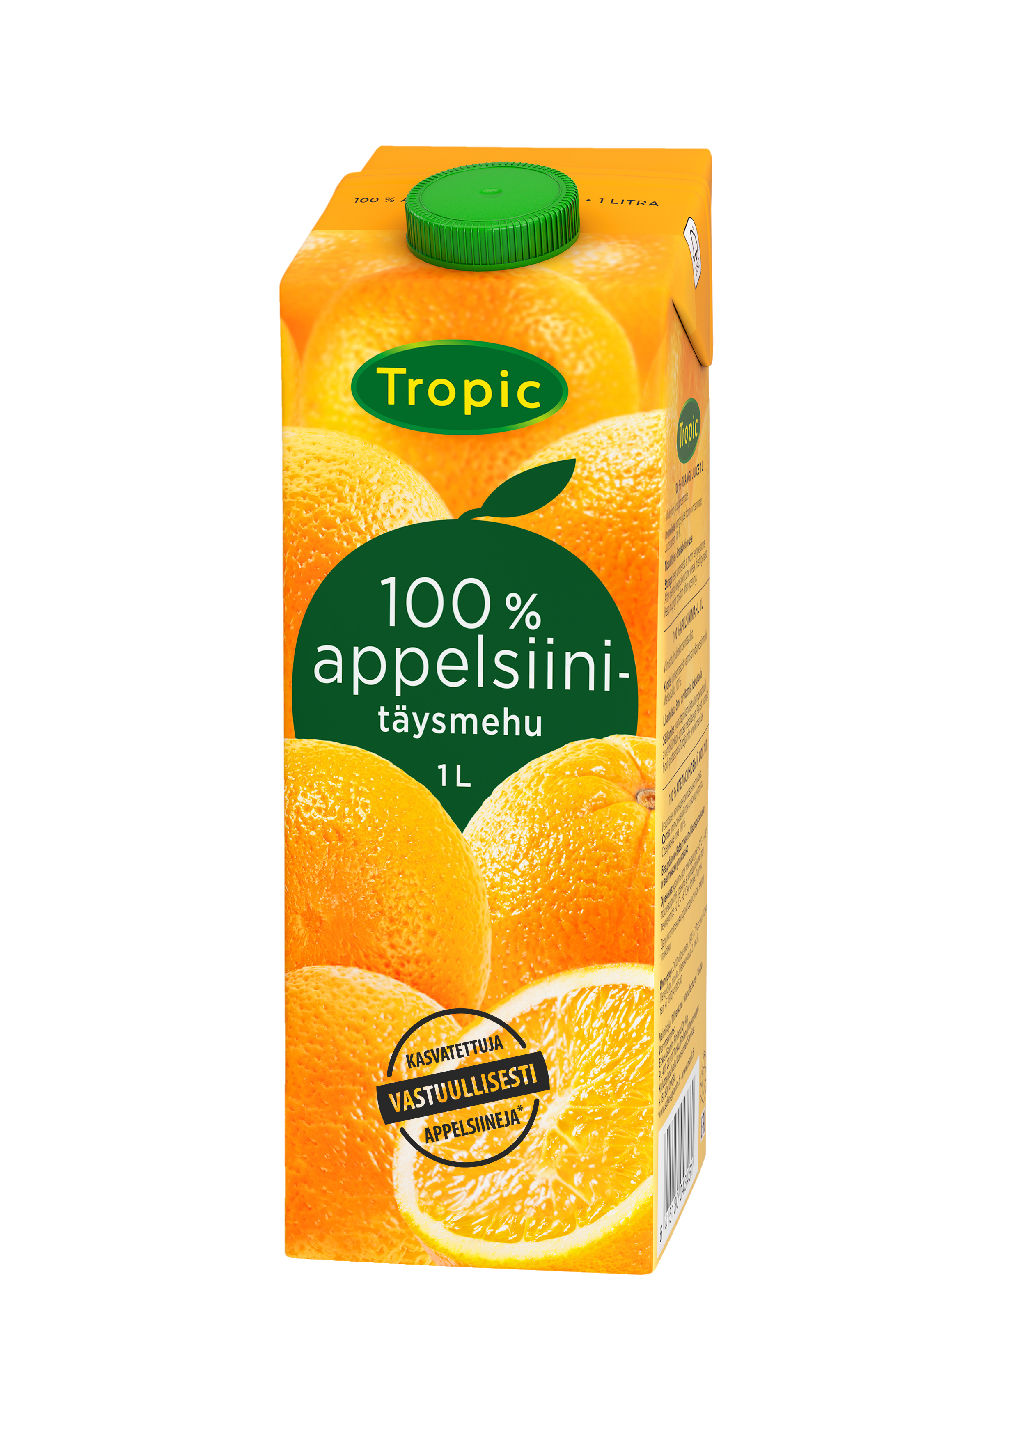 Tropic 1L Appelsiinitäysmehu 100%